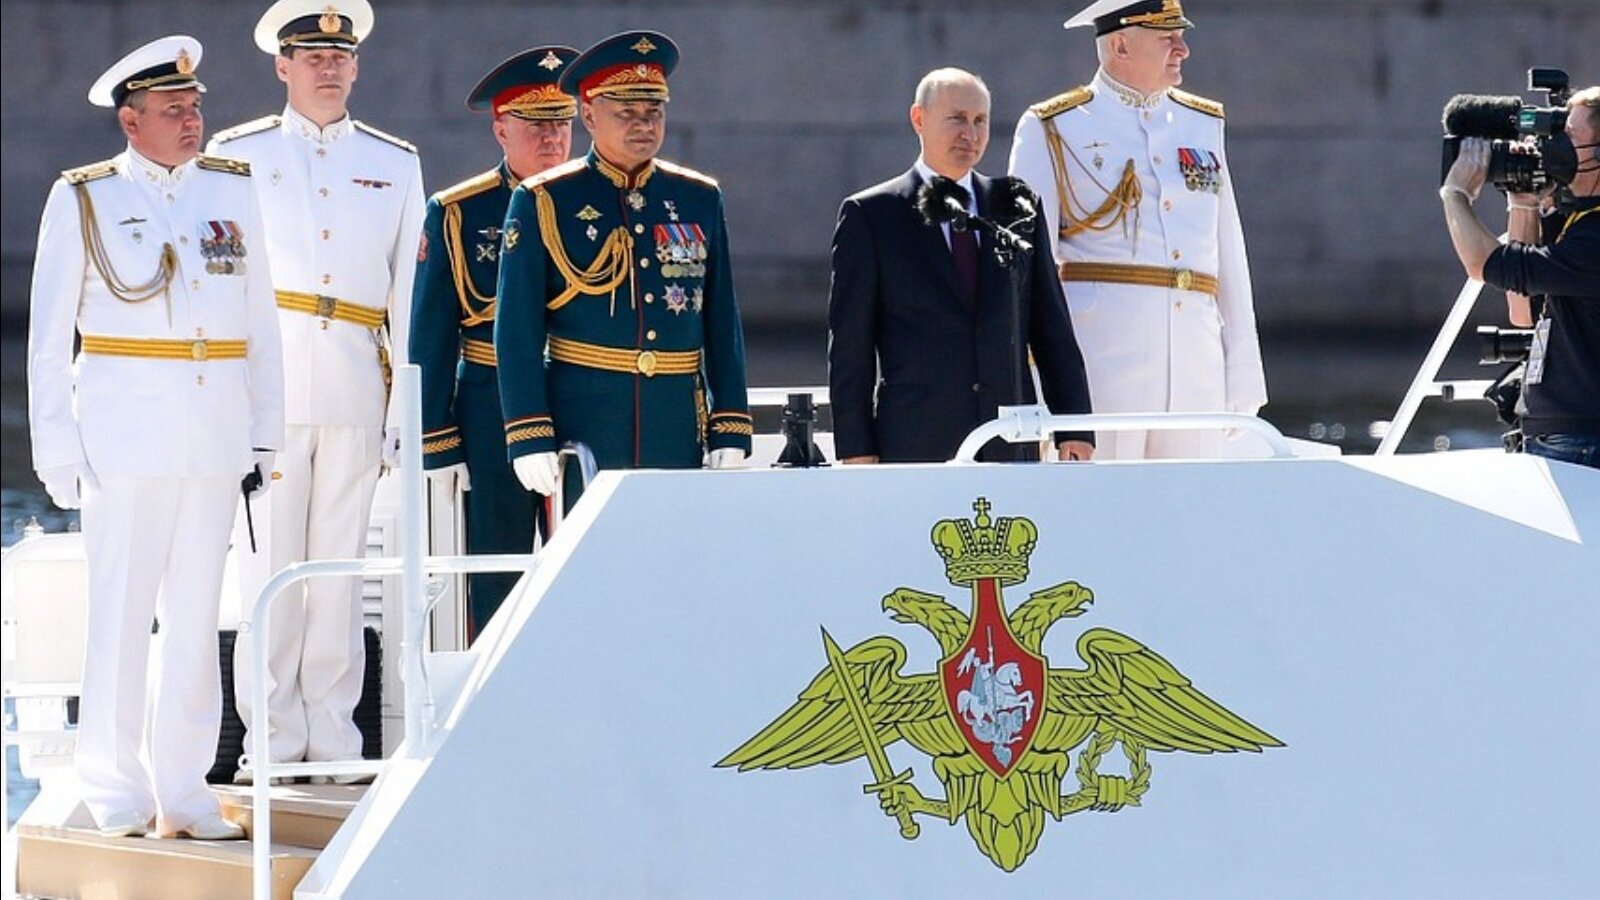 Focus назвал два вида оружия, на которые делает ставку Путин в борьбе за влияние в мире 